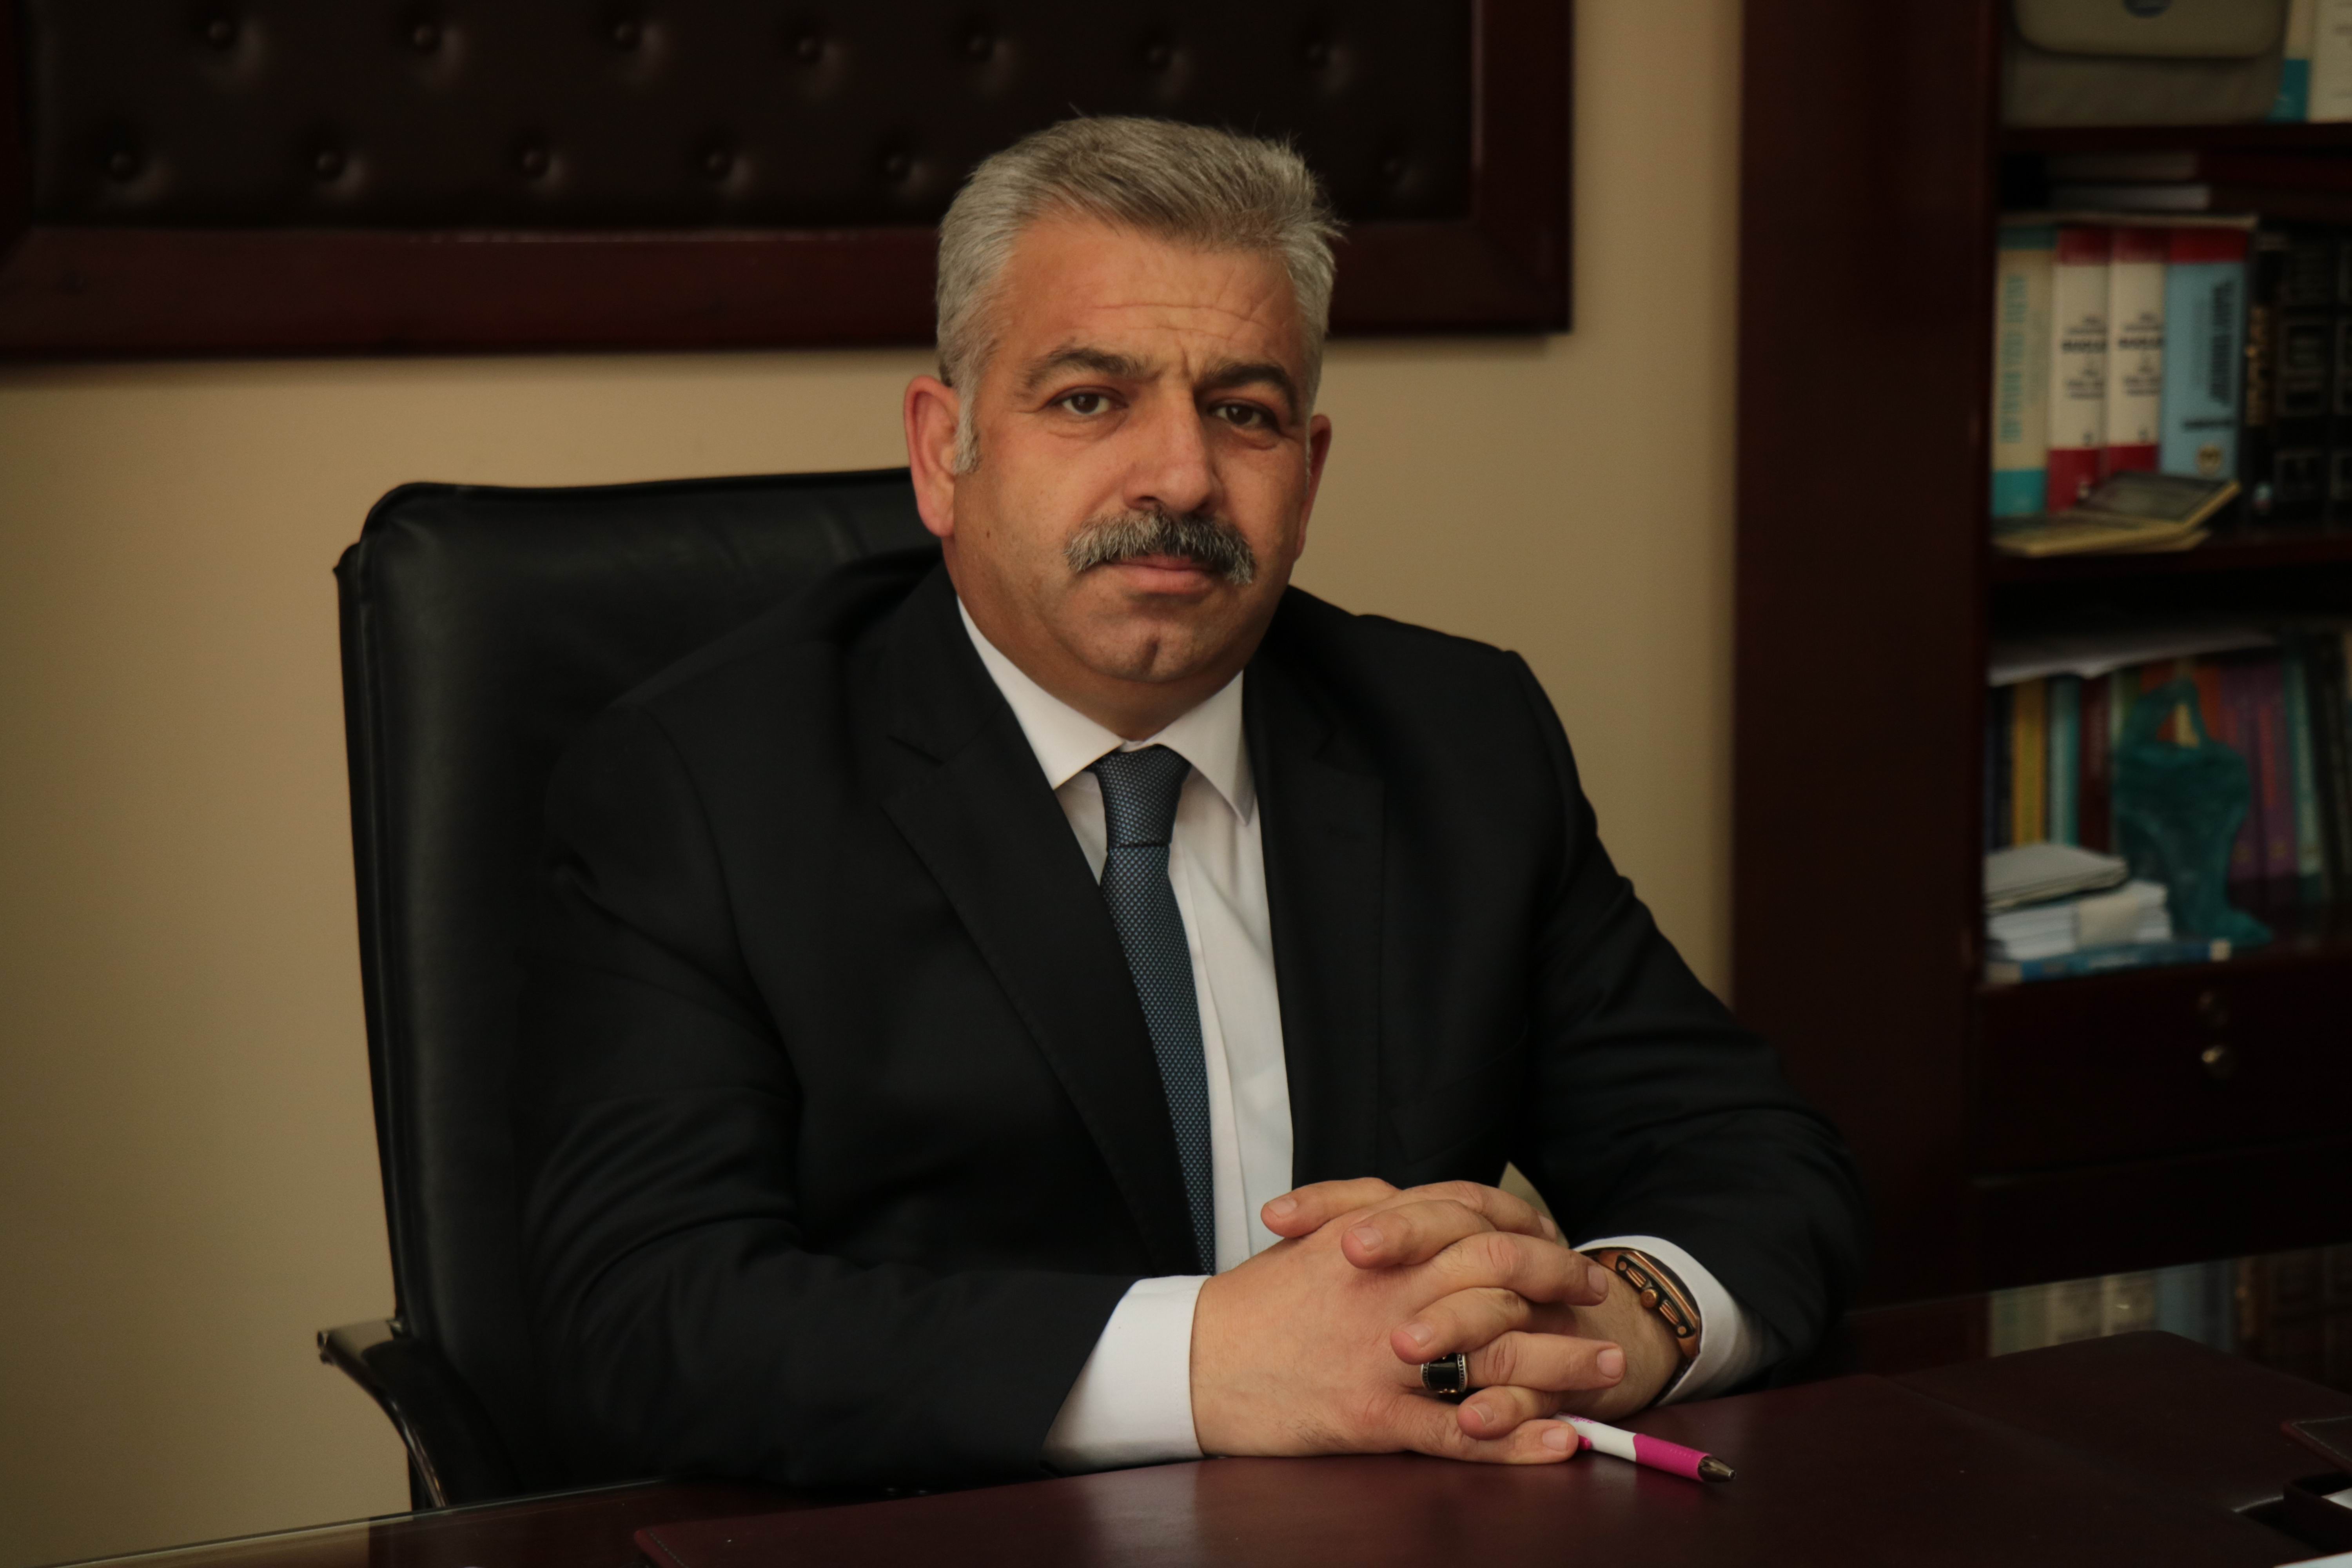  HUDER, Kırşehir İl Temsilcisi Bilgehan Altaş: “TBB, Başkanı ve Yönetim Kurulu üzerinden haksız kampanya ile yıpratılmaktadır”